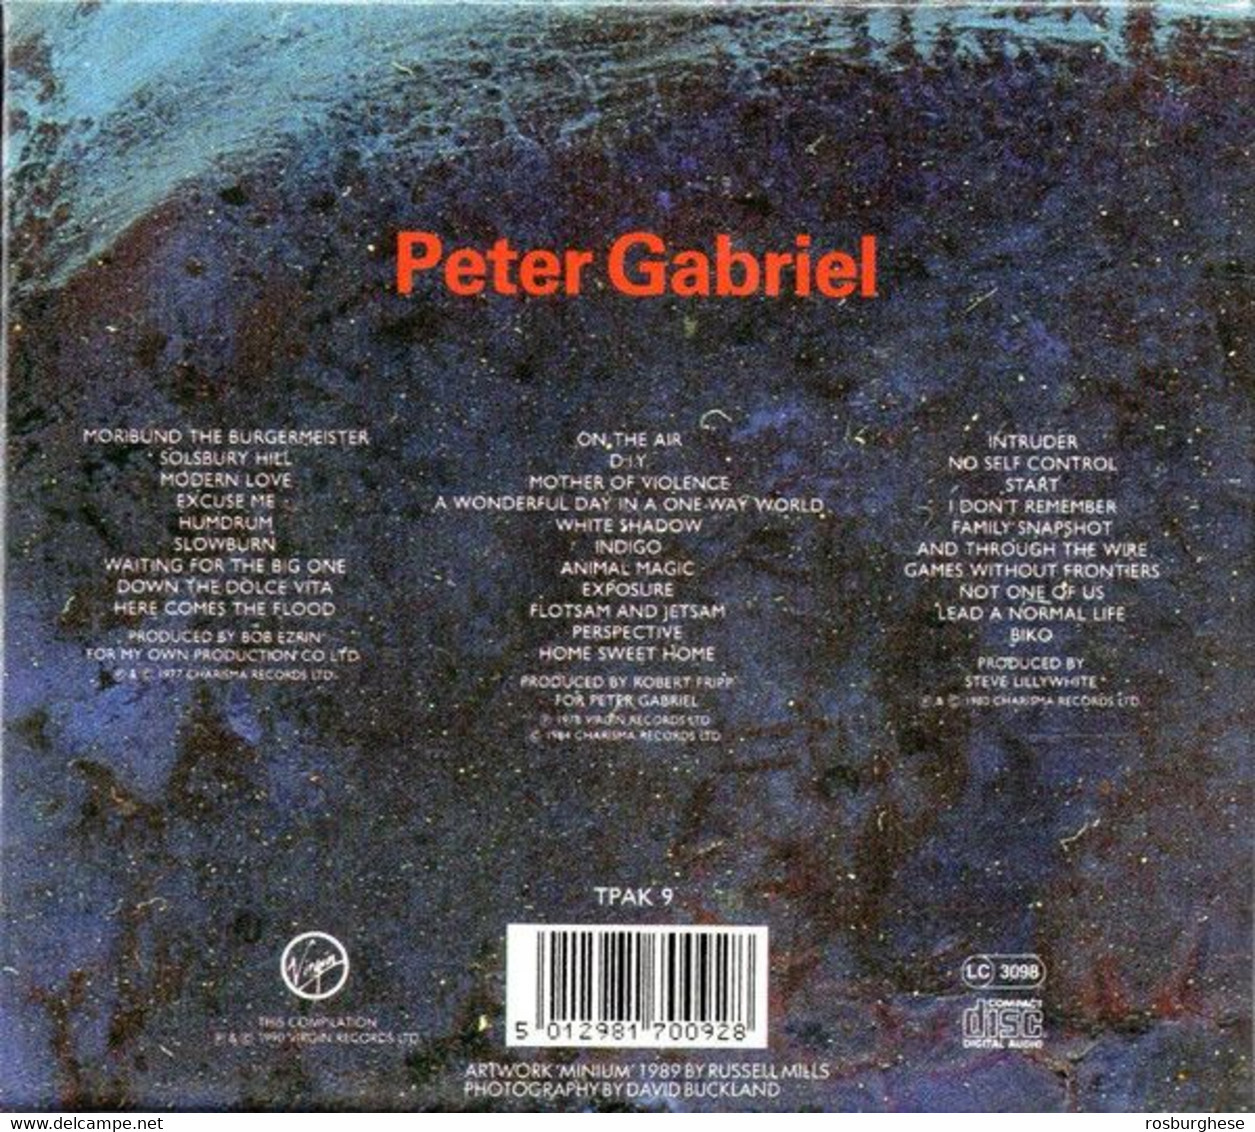 Peter Gabriel Collectors' Edition Box 3 CD PICTURE Nuovi - Edizioni Limitate